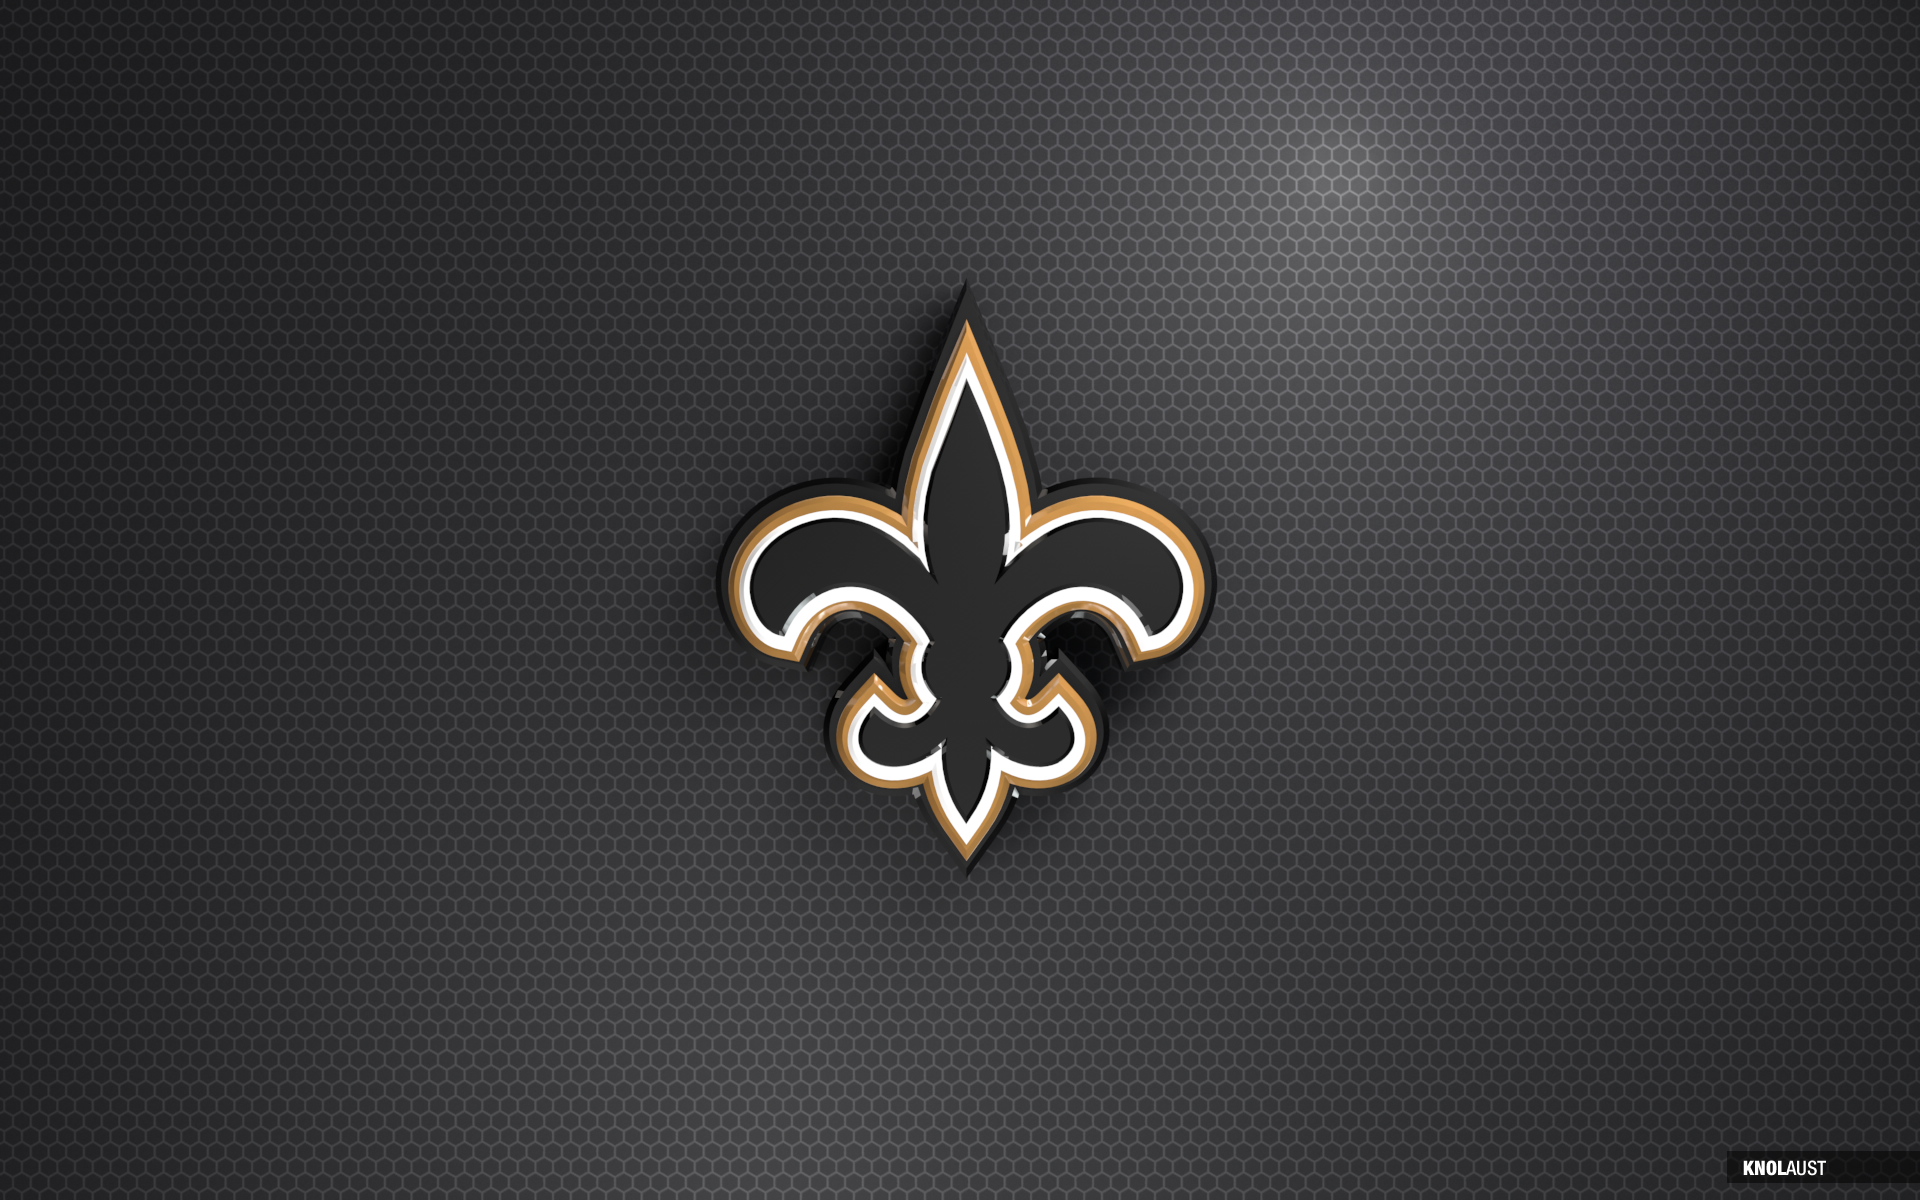 This New Orleans Saints Desktop Background